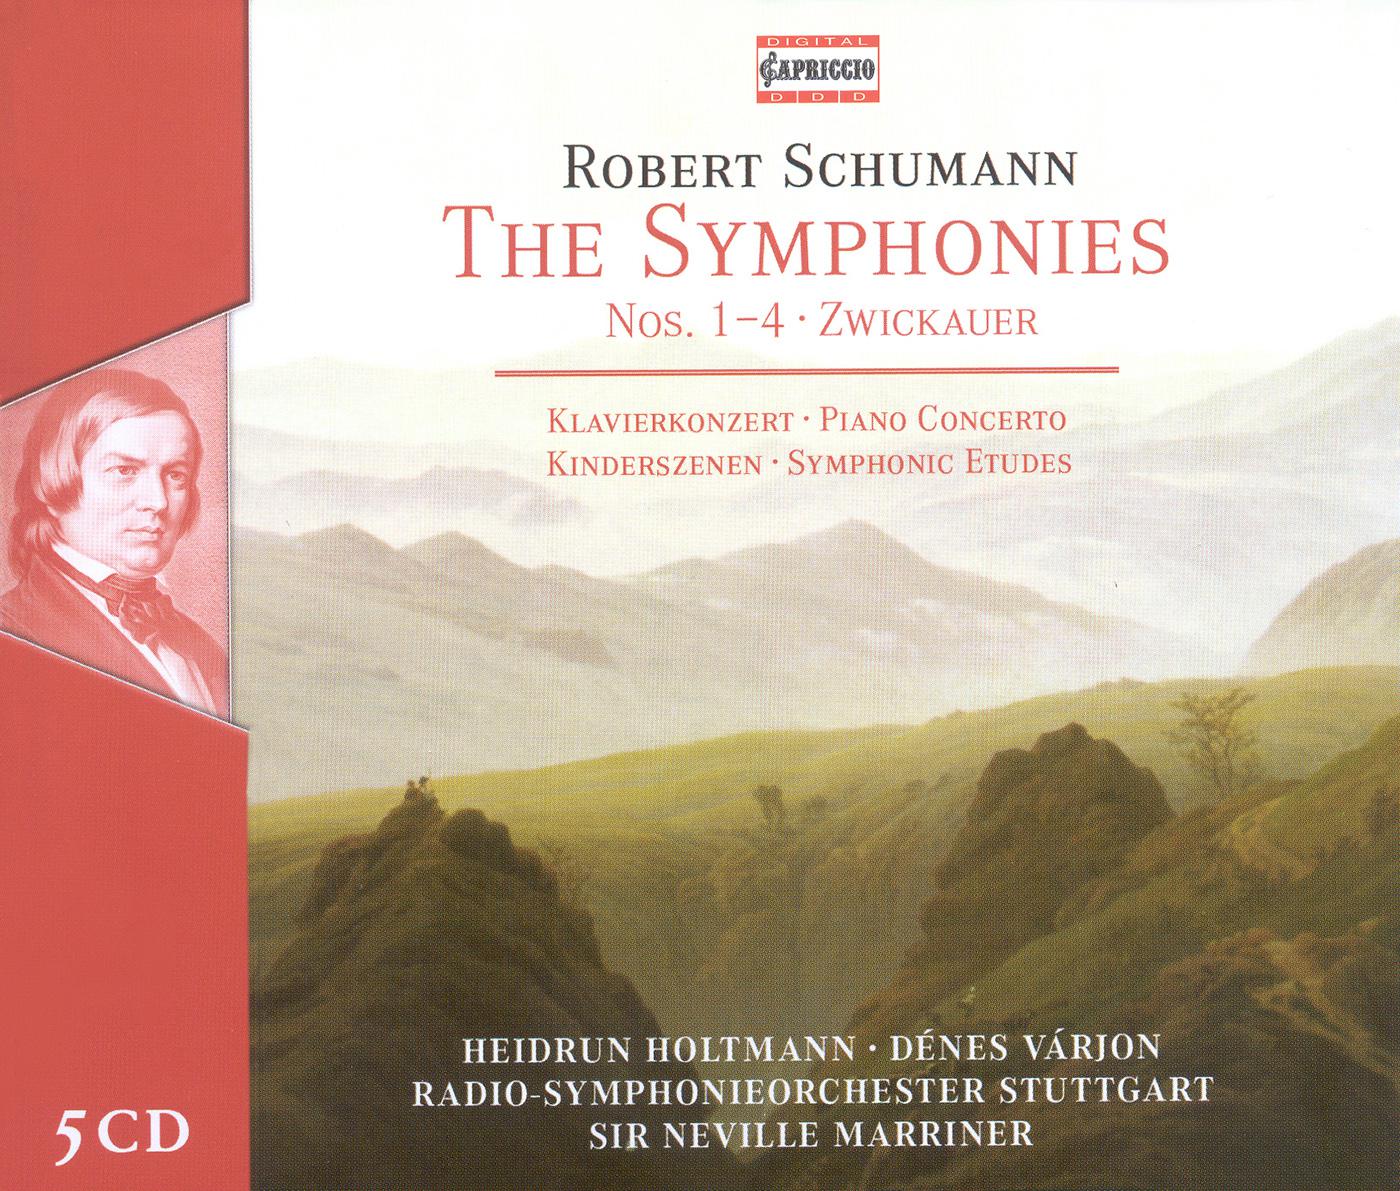 SCHUMANN, R.: Symphonies Nos. 1-4 / Piano Concerto / Symphonic Etudes / Kinderszenen (Holtmann, Varj专辑